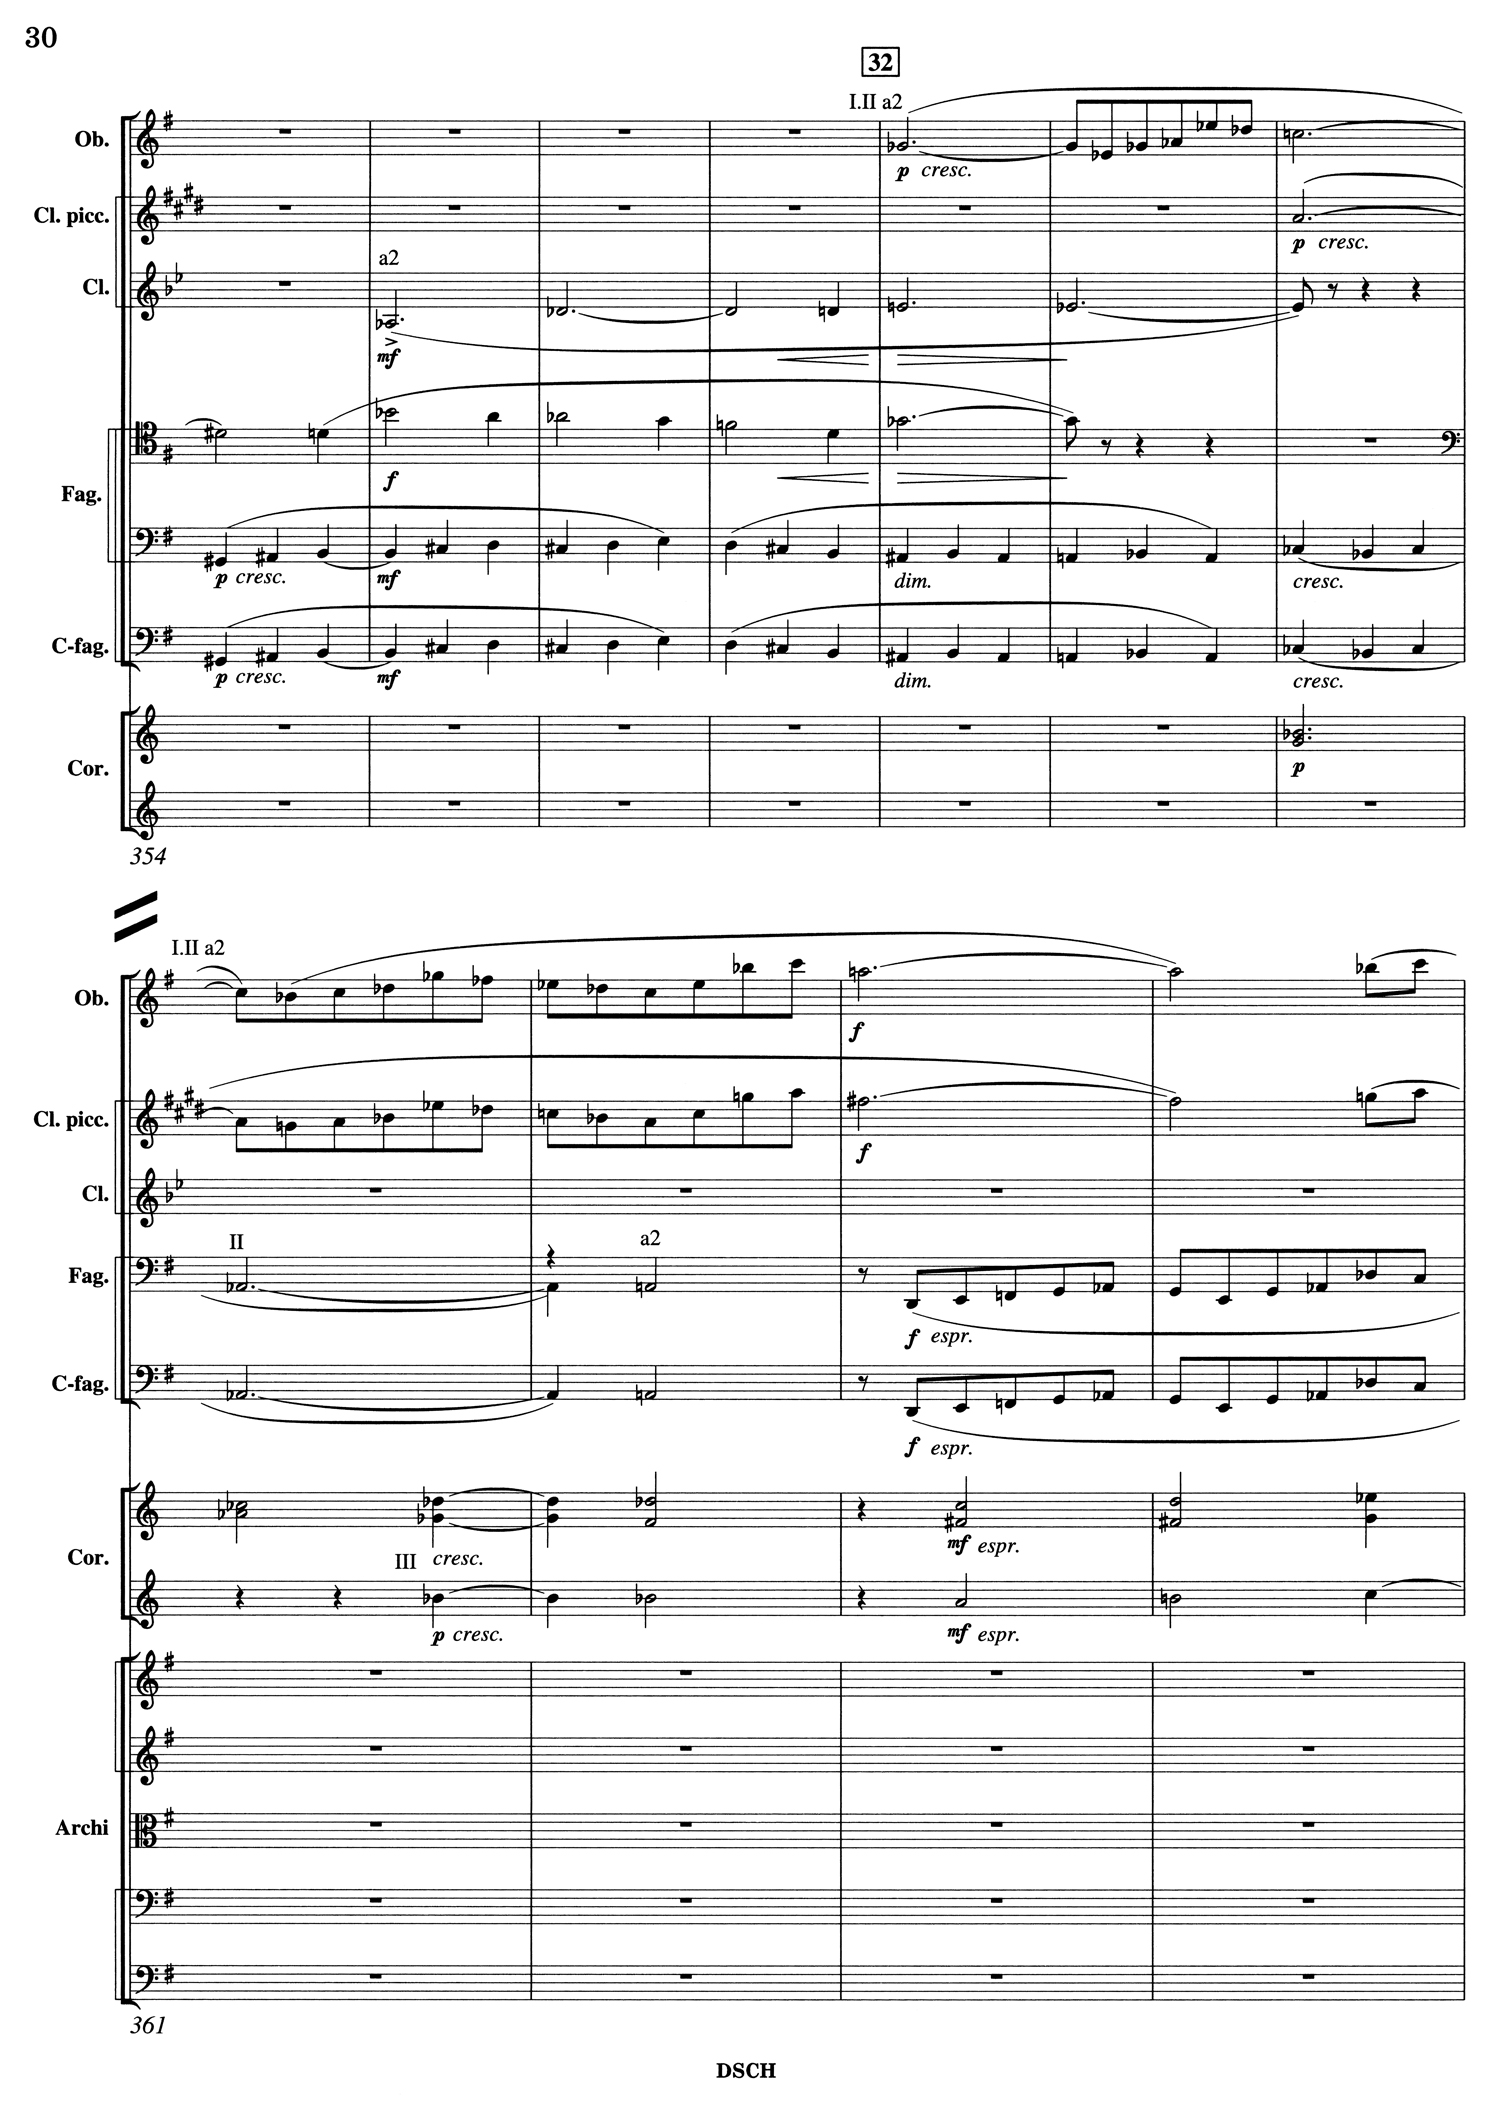 Shostakovich 10 Mvt 1 Score Page 2.jpg